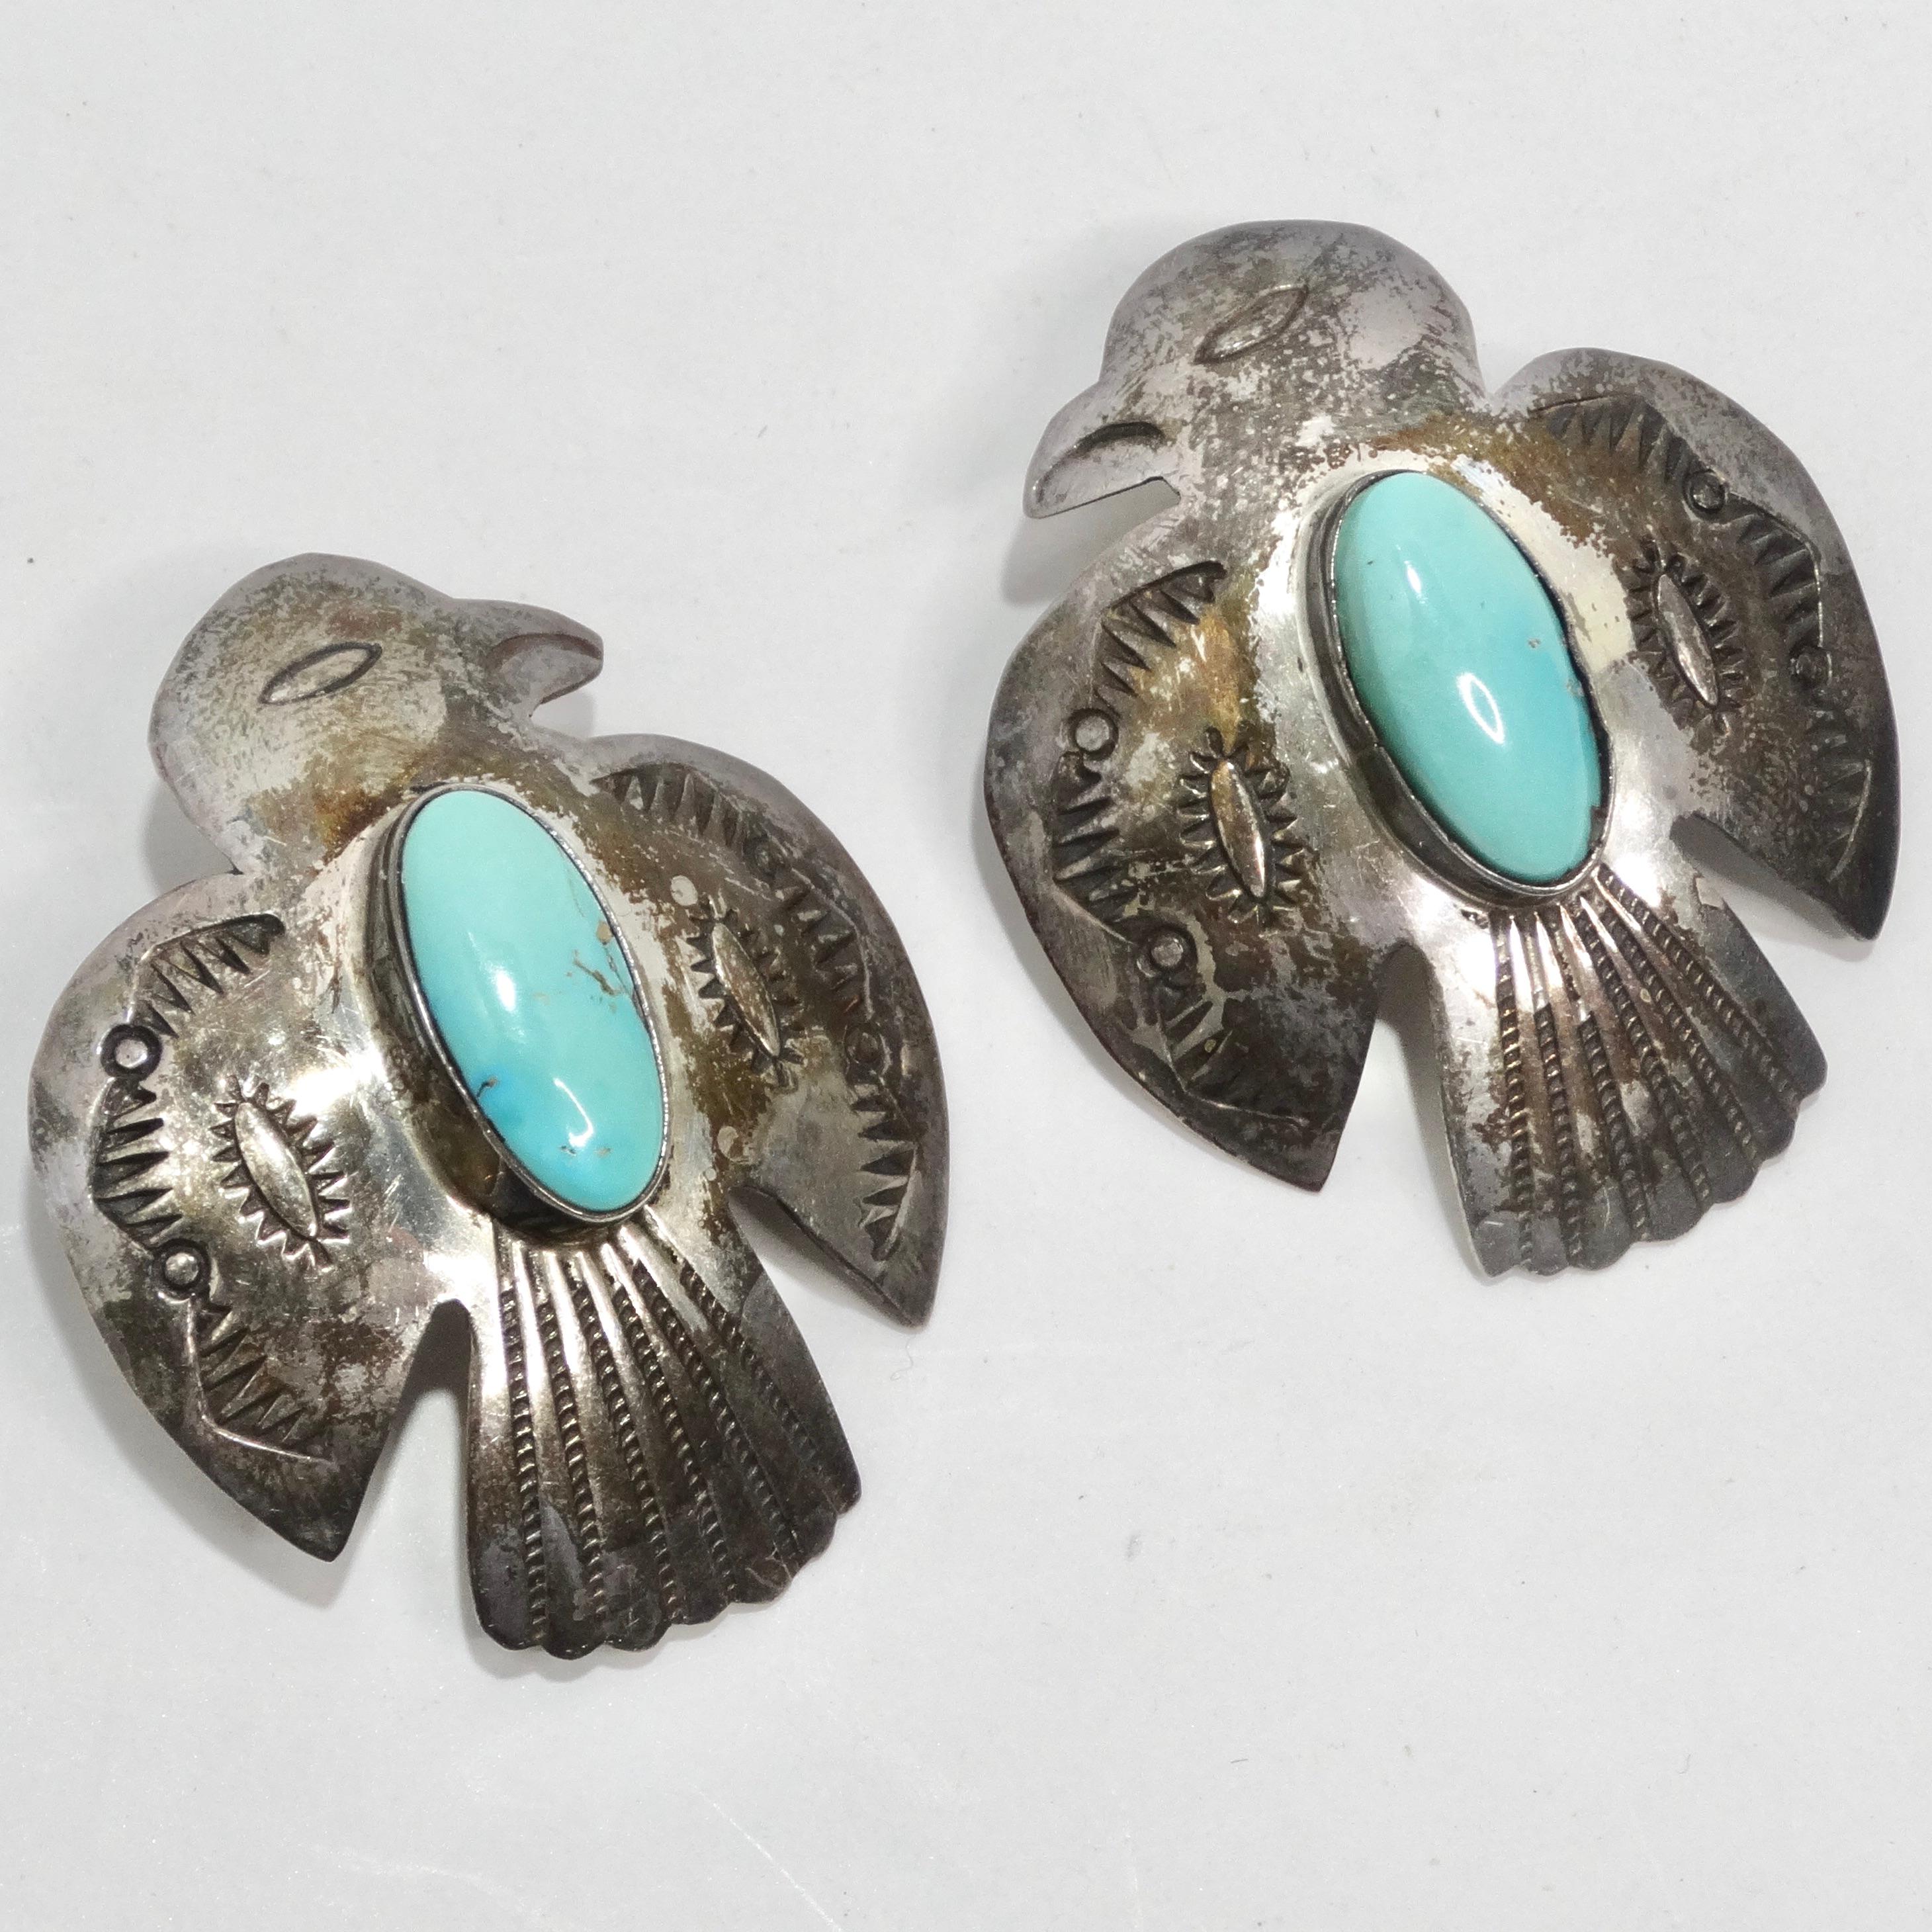 Wir präsentieren die 1960er Native American Silver Turquoise Eagle Earrings - ein Paar Statement-Ohrringe, die das handwerkliche Können und die zeitlose Eleganz des indianischen Schmucks wunderbar verkörpern. Diese Ohrringe sind nicht einfach nur